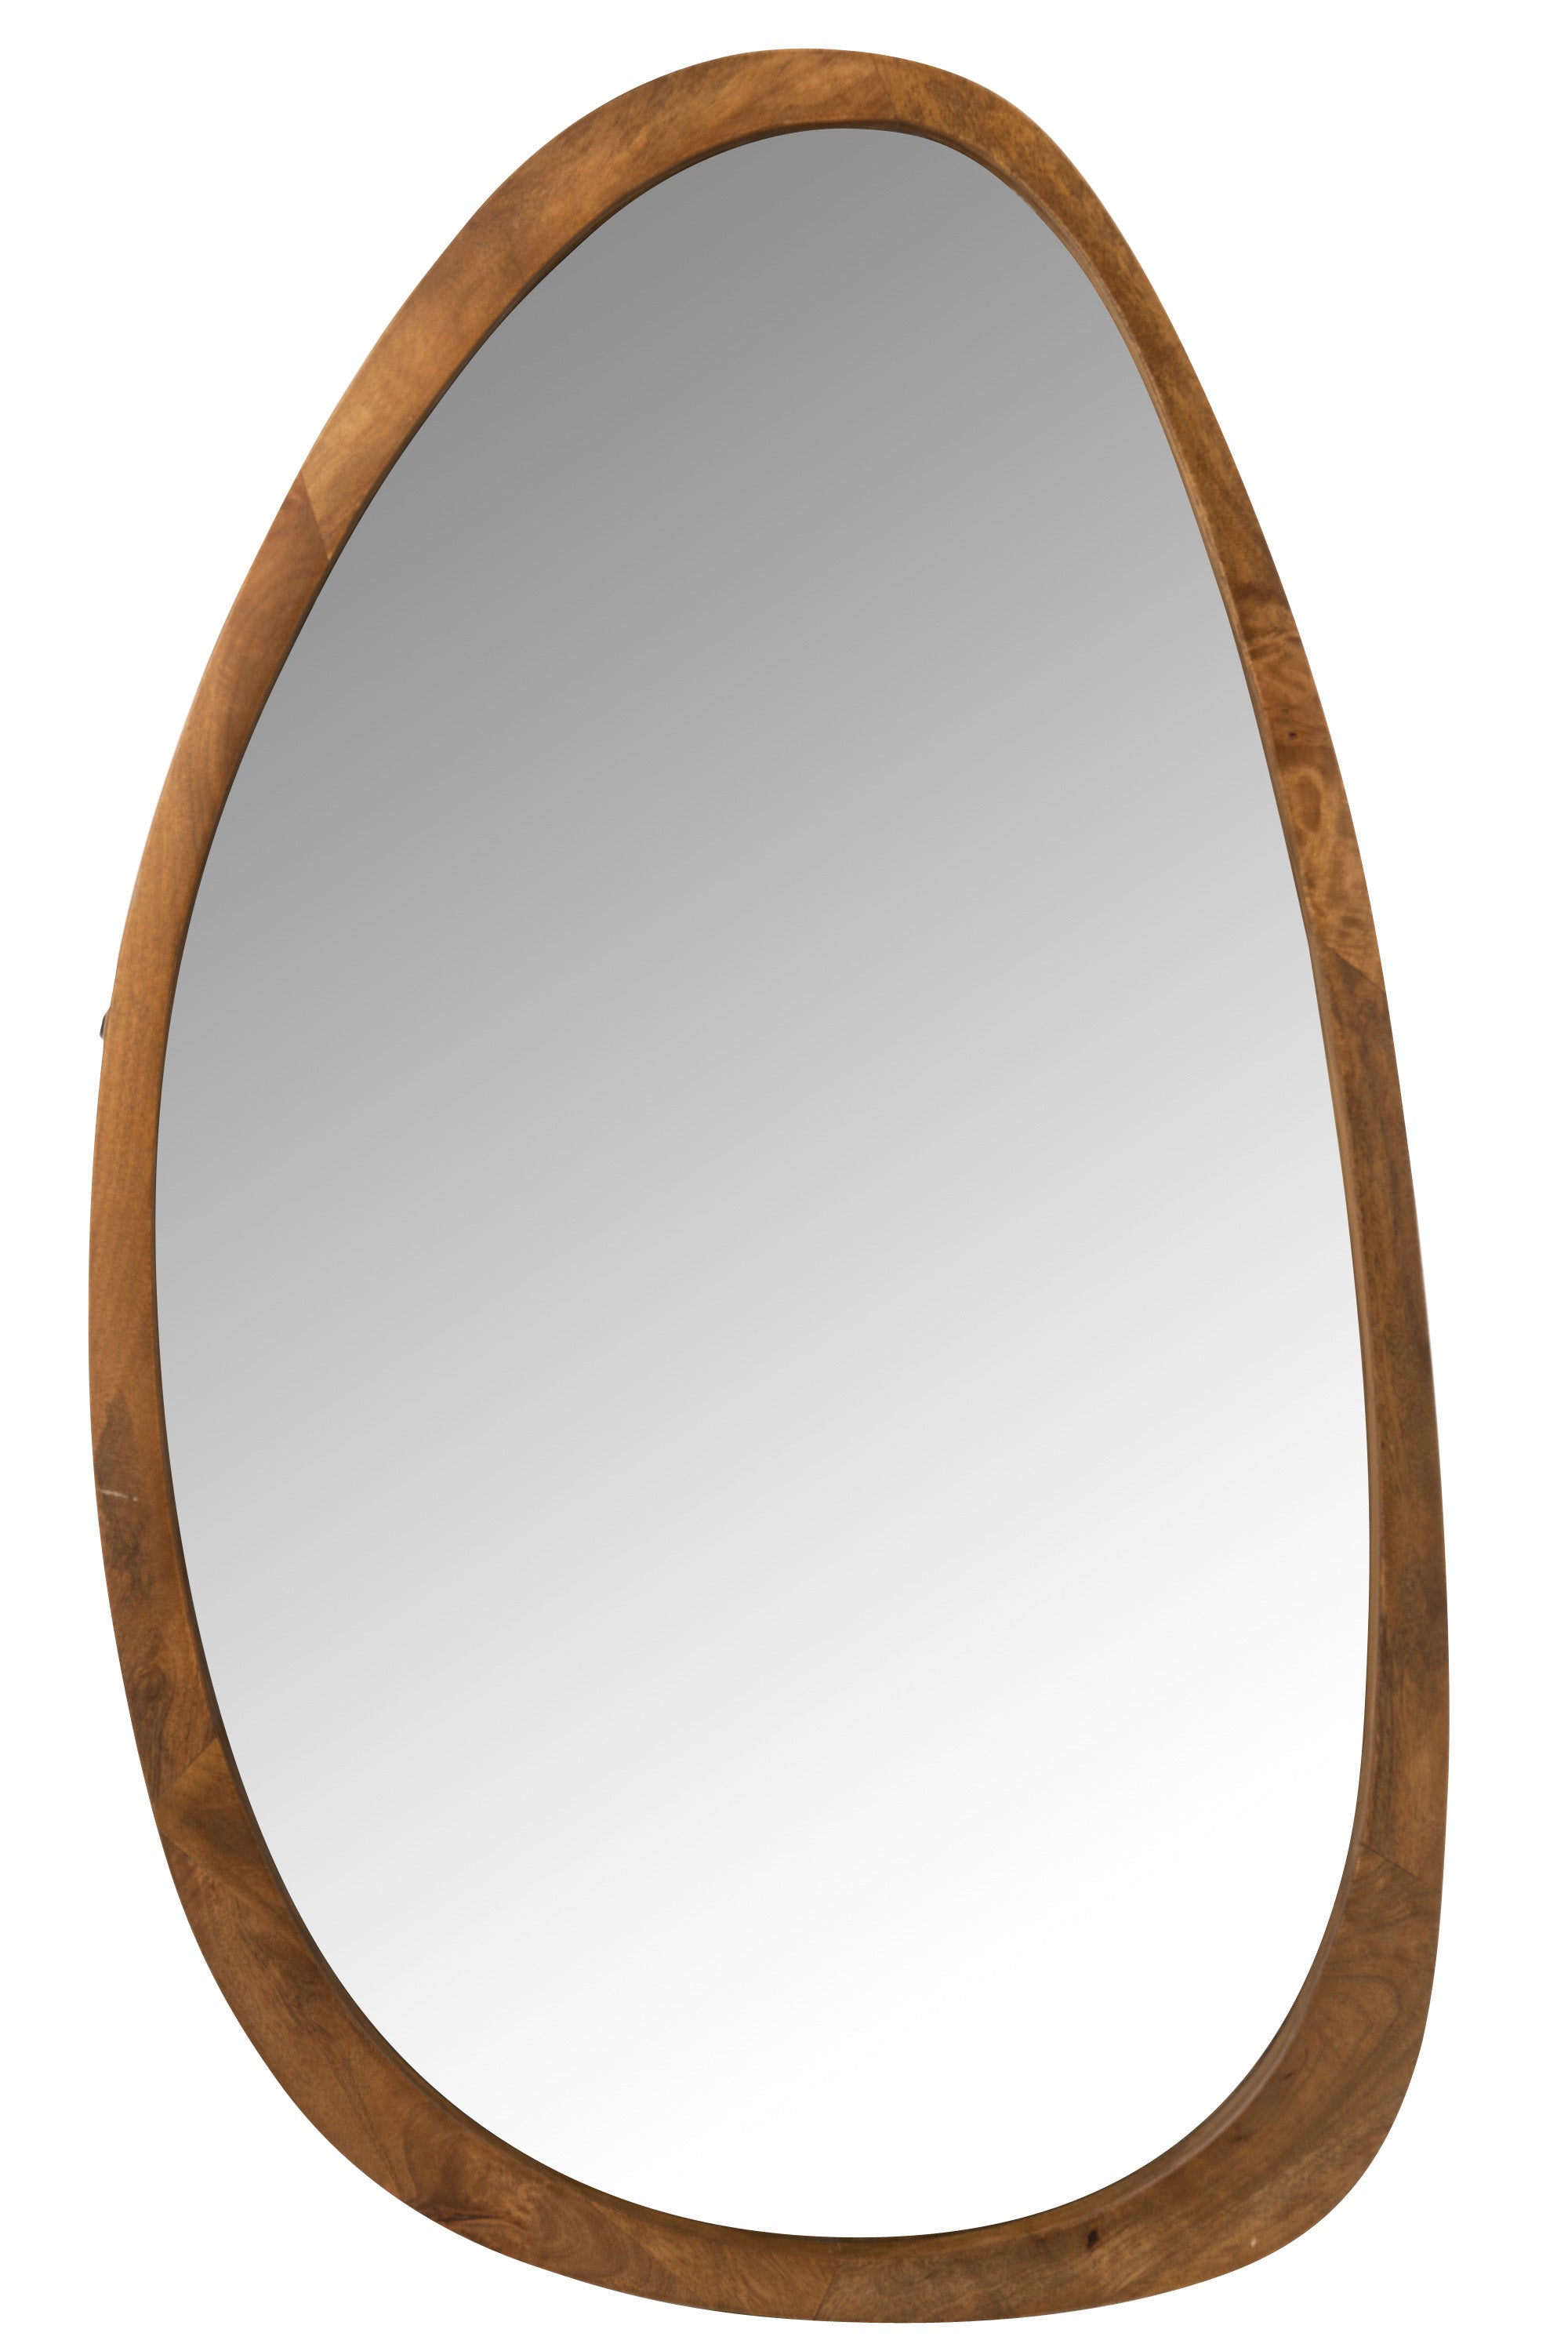 Großer Spiegel unregelmäßig länglich-oval mit einem ebenfalls unregelmäßig oval gestaltetem Rahmen aus Mangoholz.